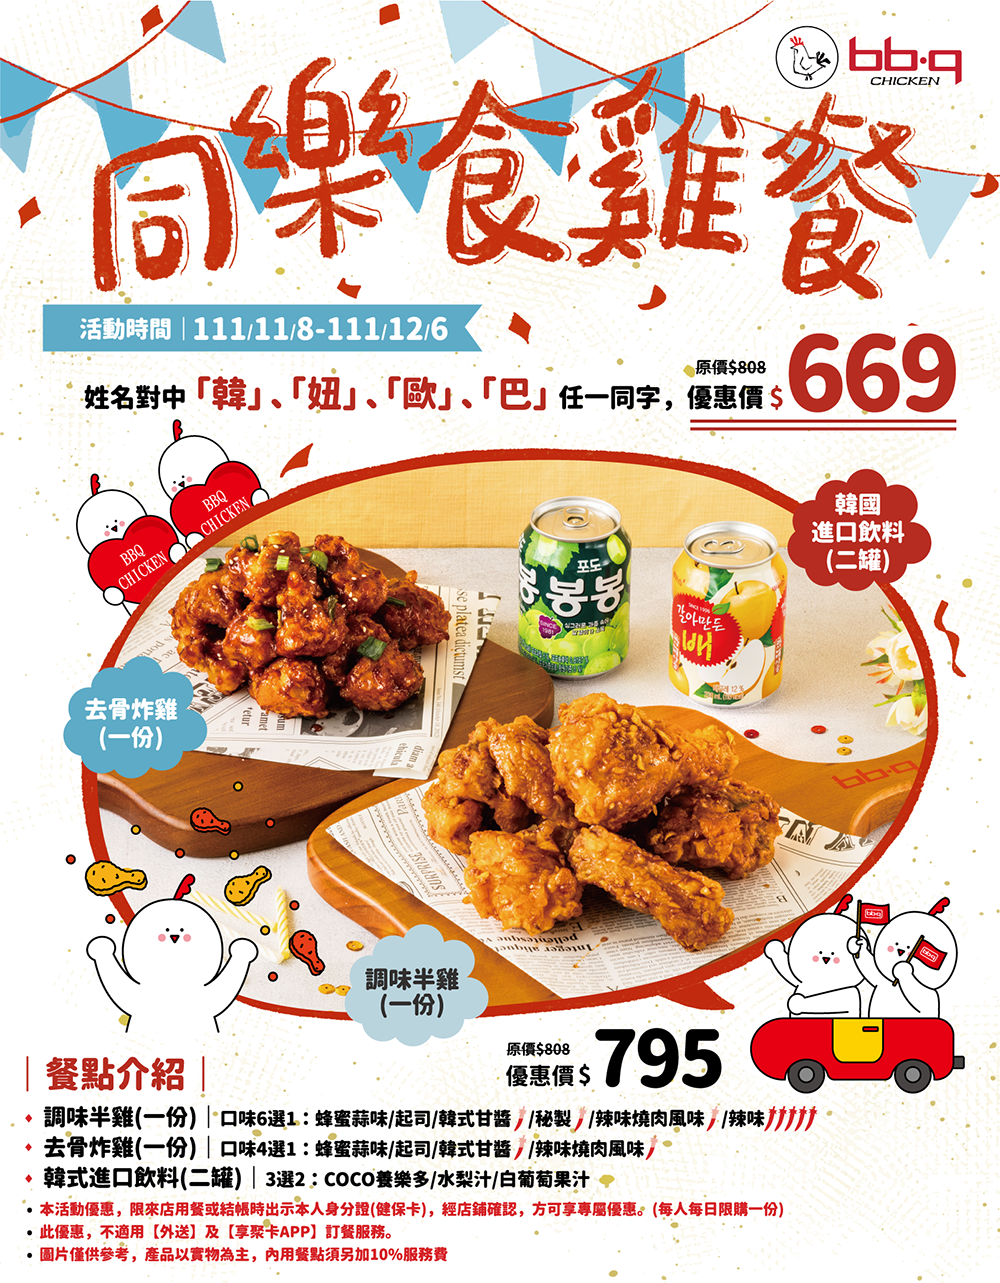  限時一個月優惠！bb.q CHICKEN「同樂食雞餐」一共包含兩種口味的韓式炸雞